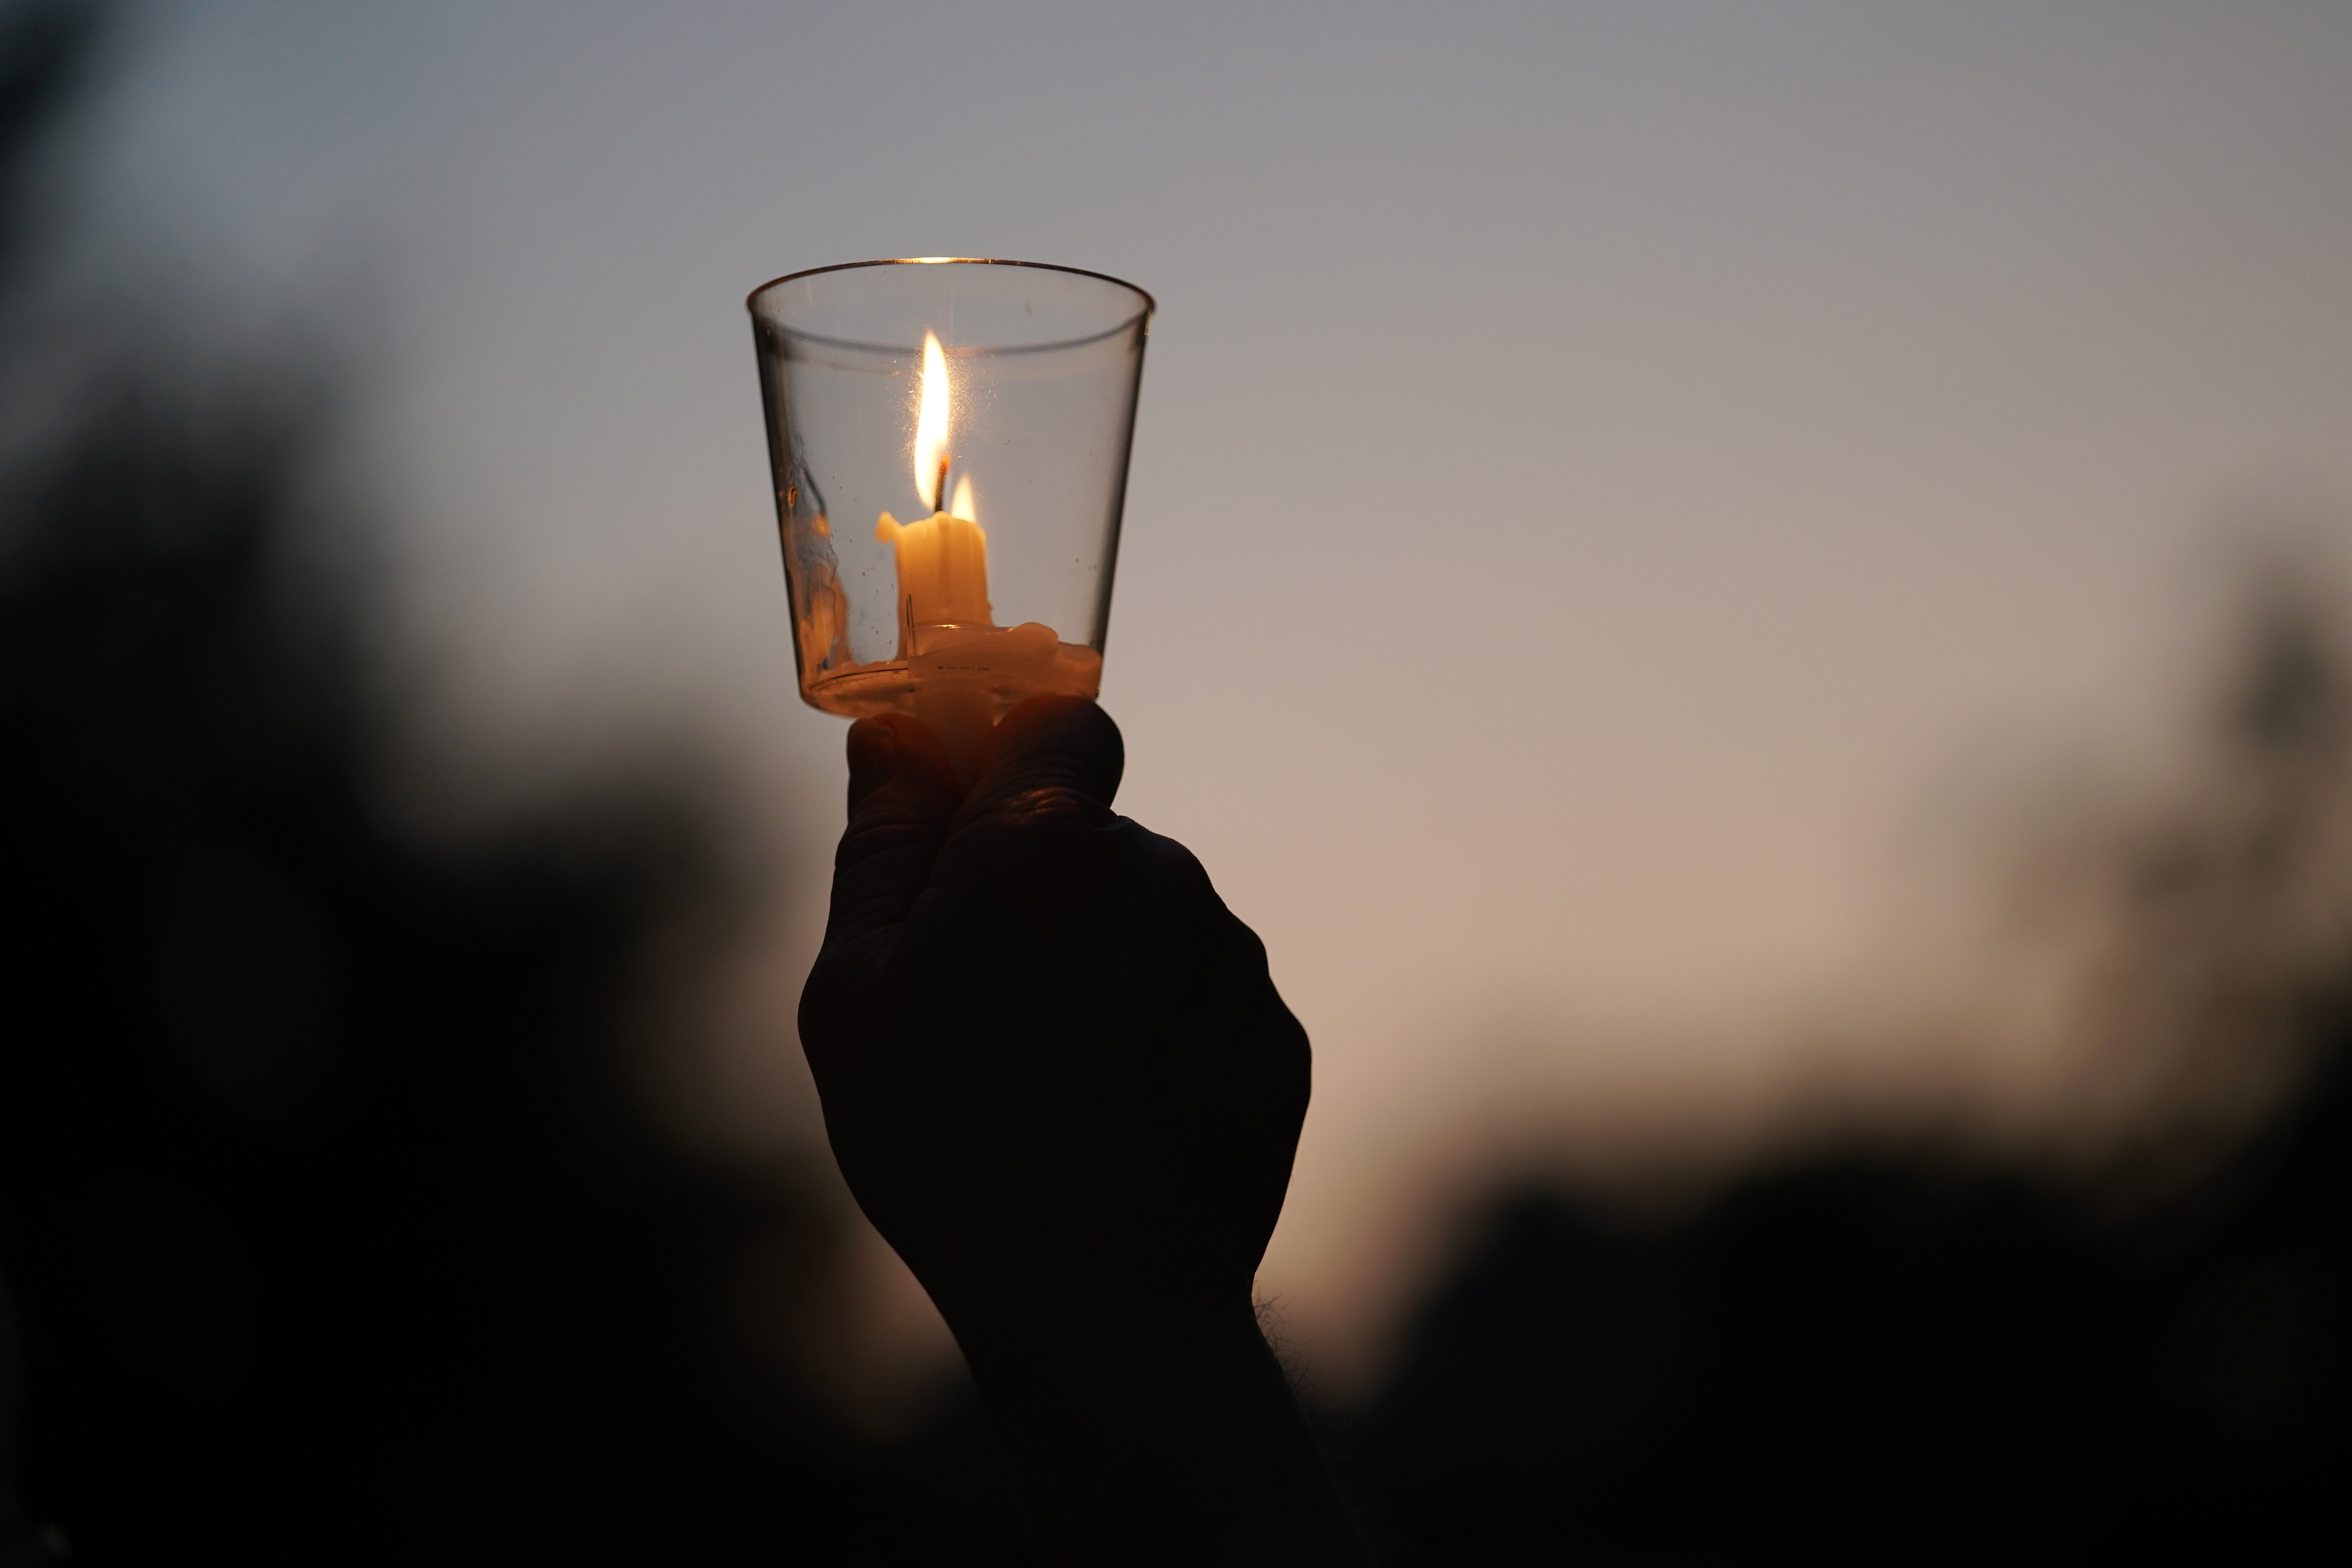 8月4日,在美国俄亥俄州代顿市,悼念者手持点燃的蜡烛